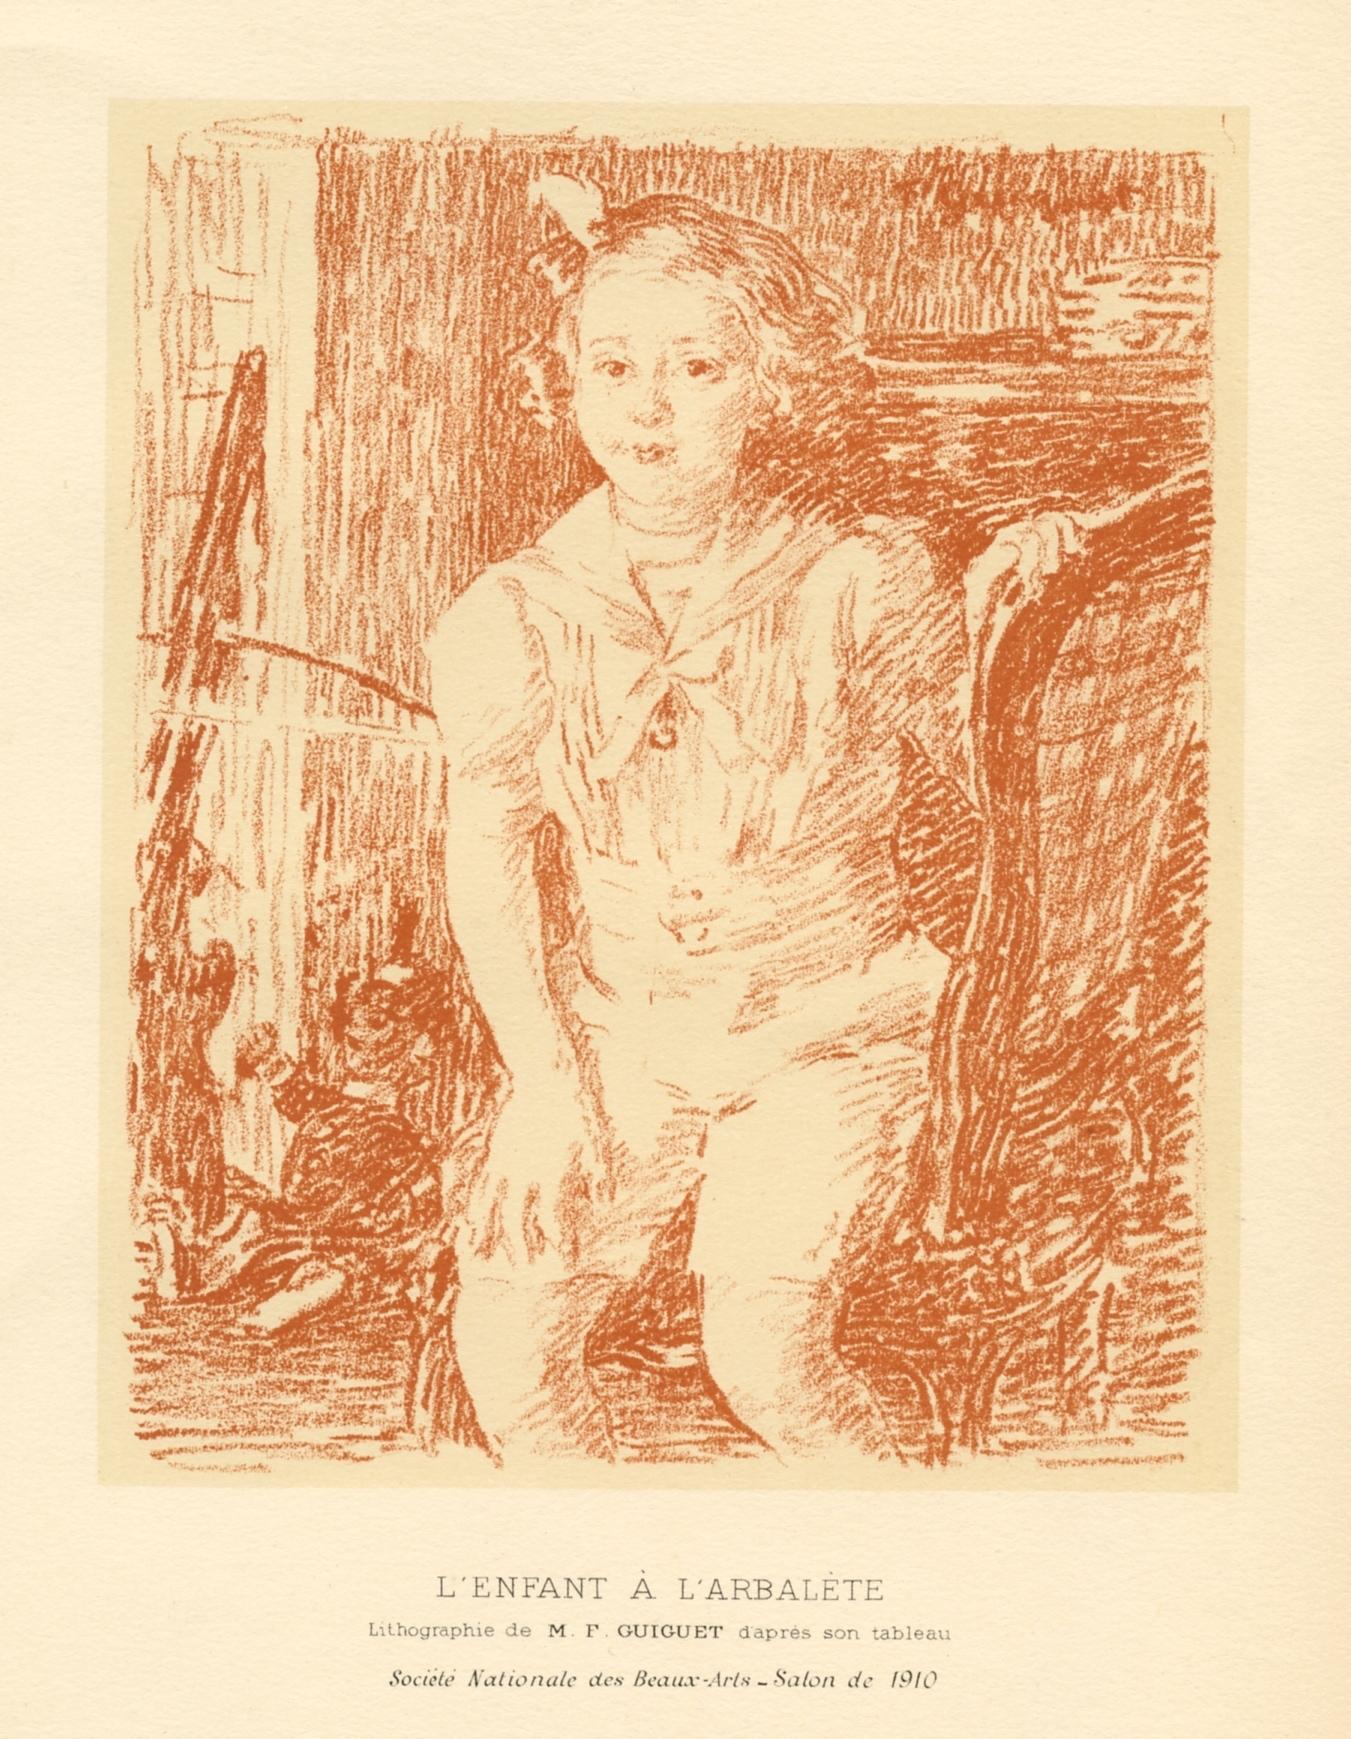 "L'enfant a l'arbalete" original lithograph - Print by Francois Guiguet